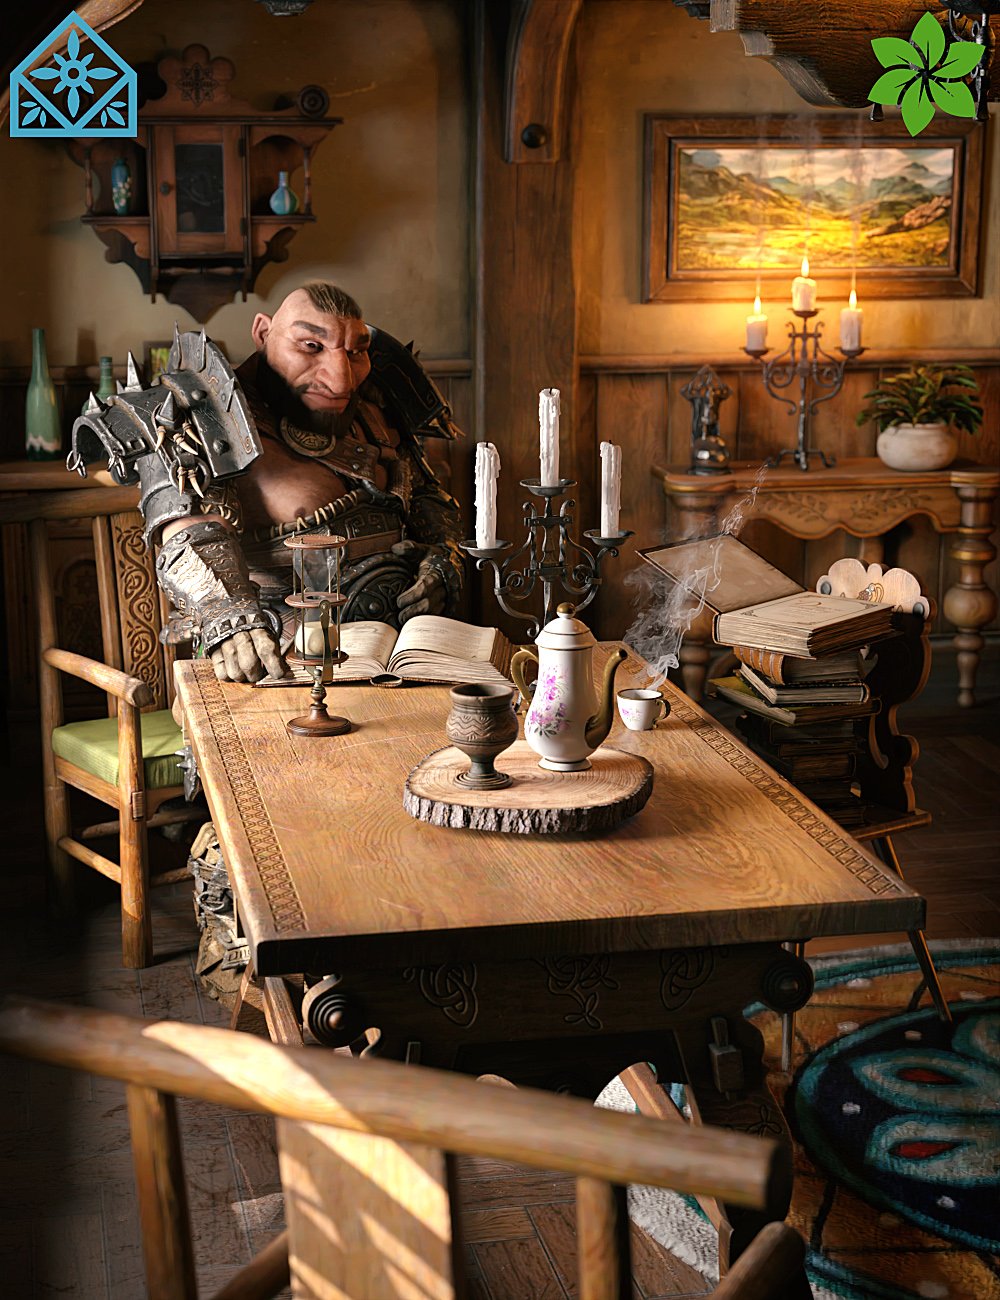 ROG Fantasy Home - Living Room Furniture Set by: StrangefateRoguey, 3D Models by Daz 3D